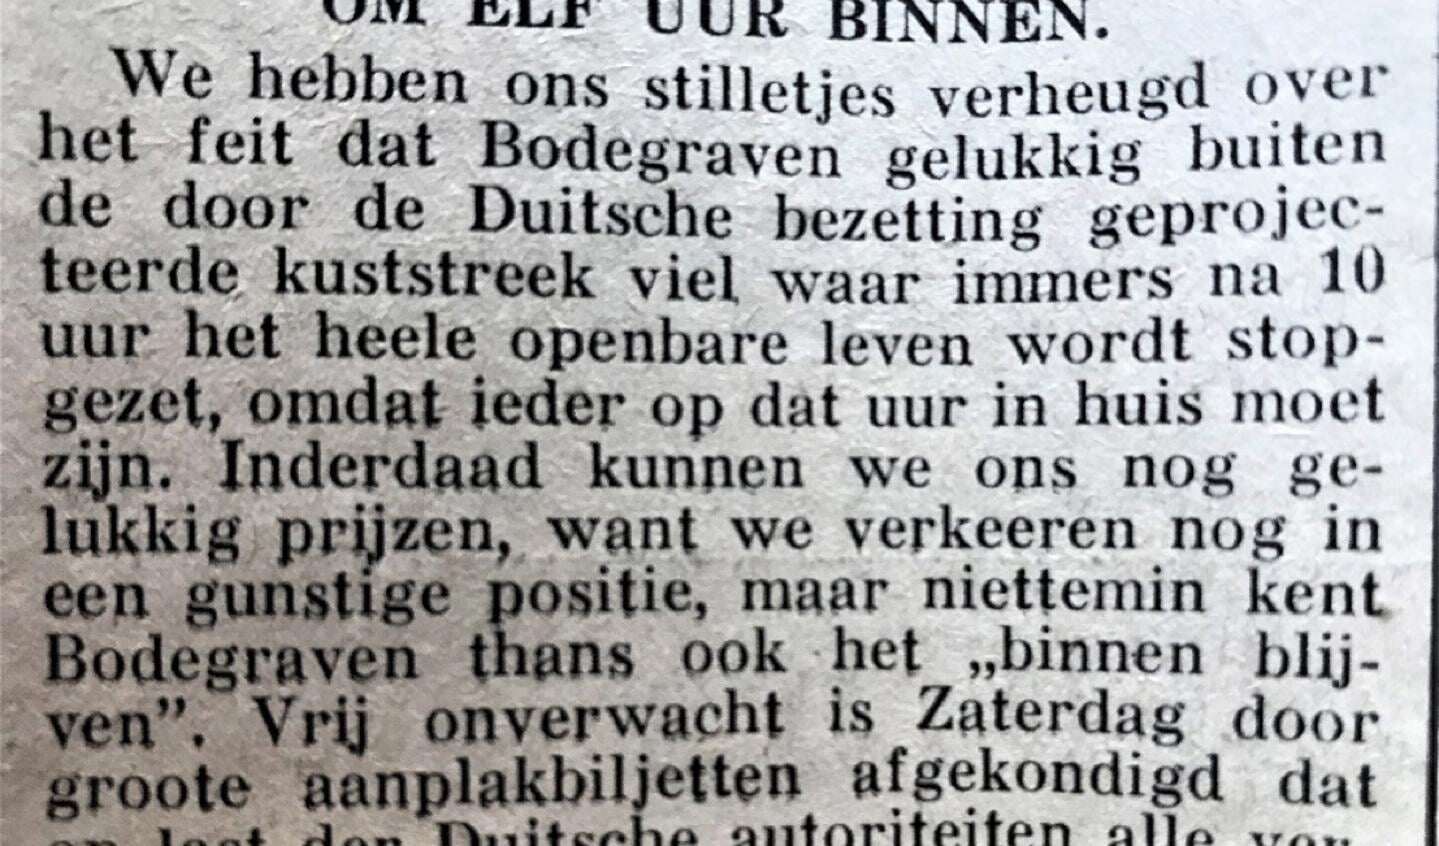 Krantenberichtje in Bodegraven van begin tweede wereldoorlog.